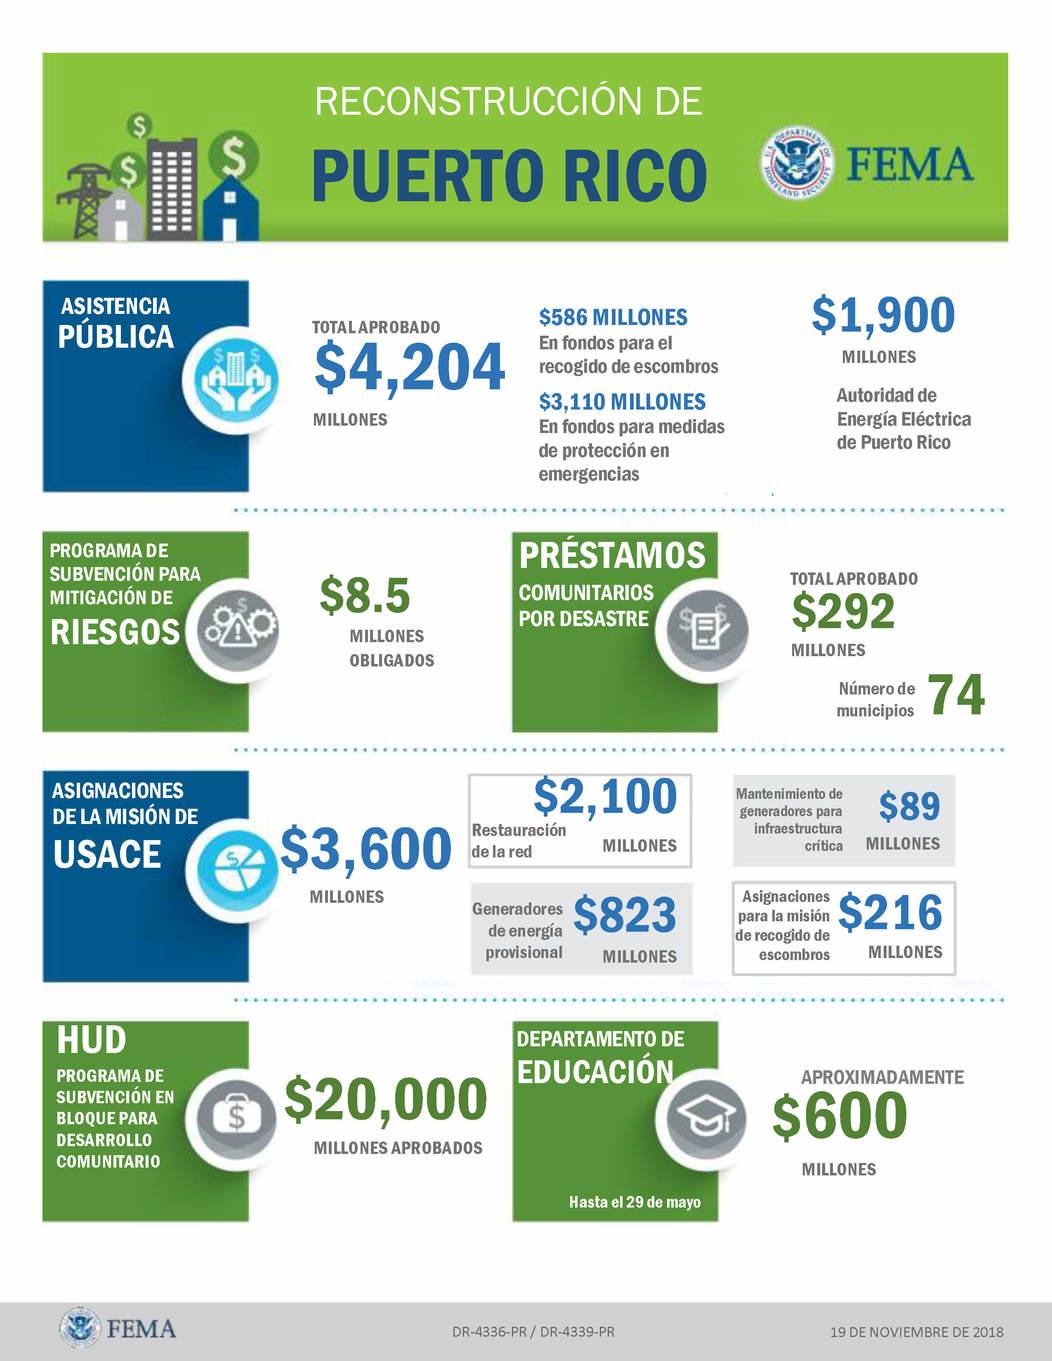 Reconstrucción de Puerto Rico. Asistencia Pública - total aprobado $4,200 millones. $586 millones en fondos para el recogido de escombros, $3,100 millones en fondos para medidas de protección en emergencias. Autoridad de Energía Eléctrica de Puerto Rico $1,900. Programa de Subvención para mitigación de riesgos $8.5 millones obligados. Préstamos comunitarios por desastre - $292 millones en 74 municipios. Asignación de la mission de USACE (United States Army Corps of Engineers) 3,600 millones - restauración de la red $2,100 millones, generadores de energía provisional $823 millones, Mantenimiento de generadores para infraestructura crítica $89 millones, asignaciones para la mission de recogido de escombros $216 millones. HUD - Subvención en bloque para desarrollo comunitario en la recuperación por desastre $20,000 millones aprobados. Departamento de Educación, apróximadamente $600 millones hasta el 29 de mayo.